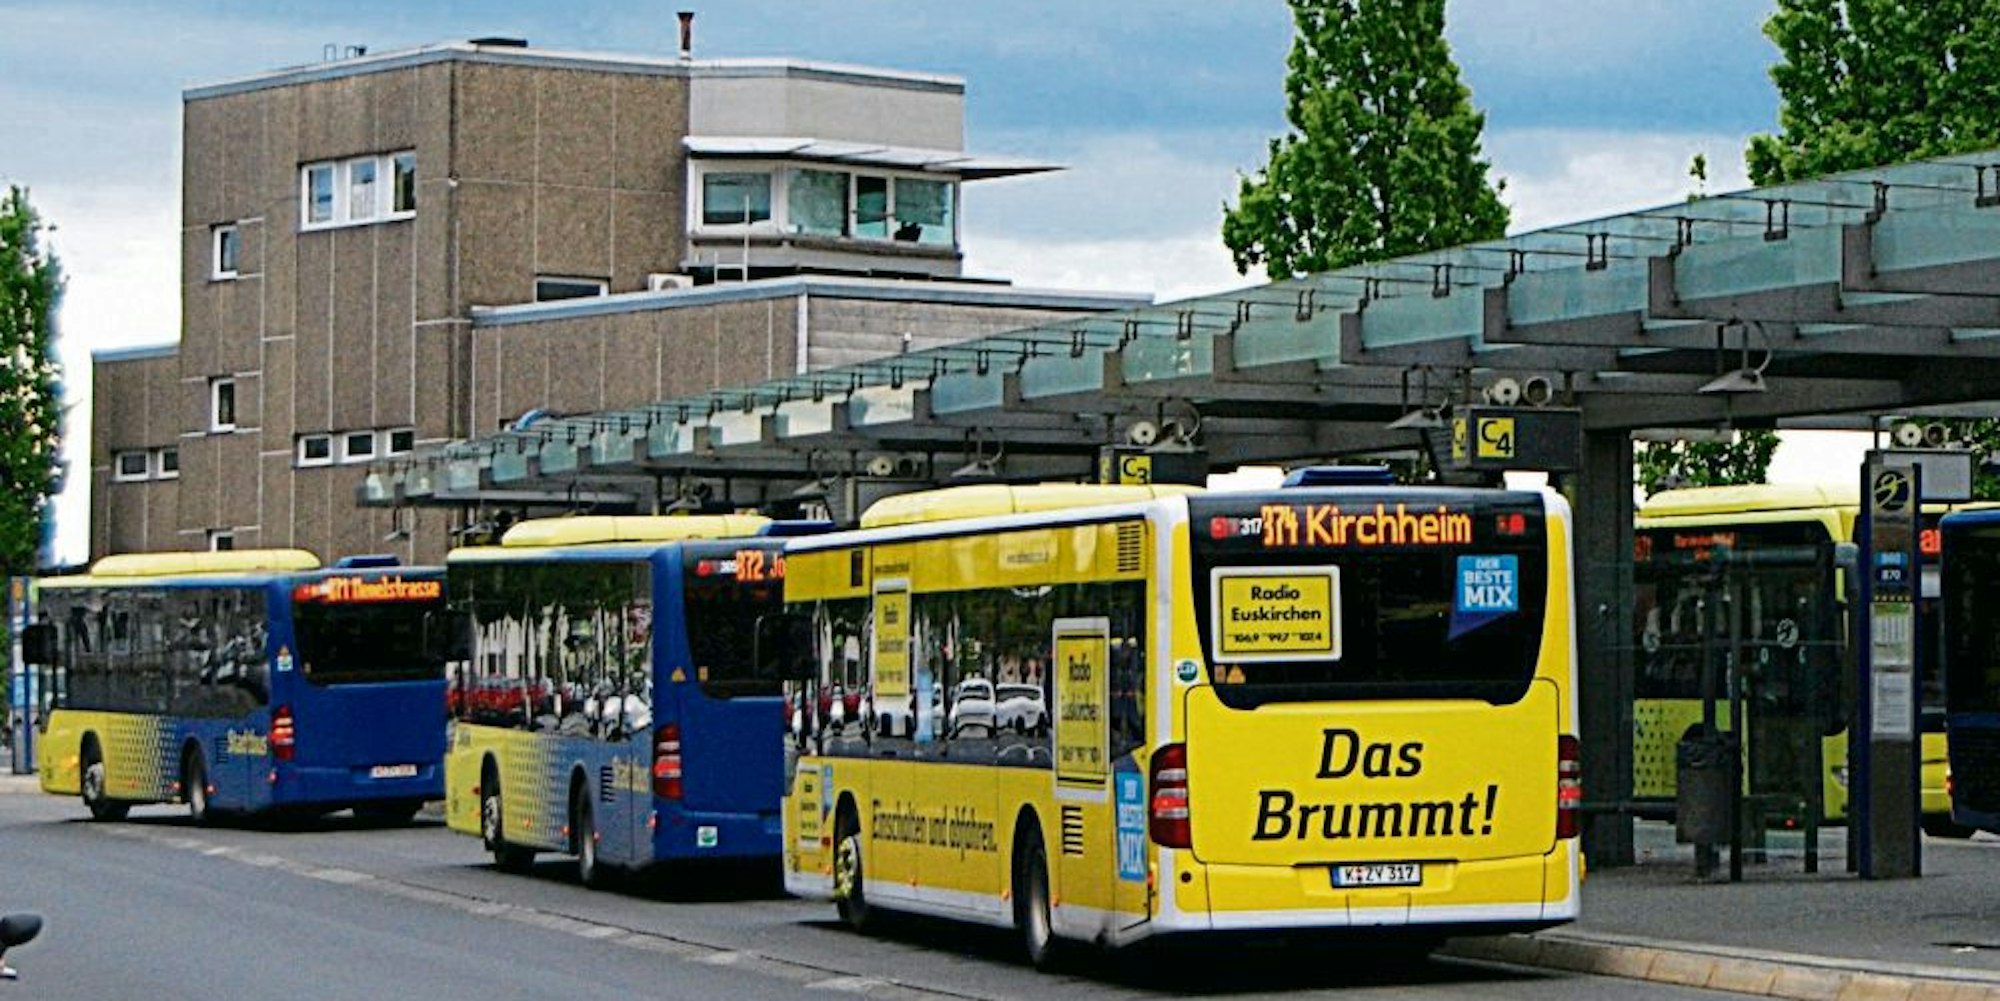 Für ihren Vorschlag, samstags für Fahrten in den Bussen der SVE kein Beförderungsentgelt zu erheben, fand die FDP keine Mehrheit.